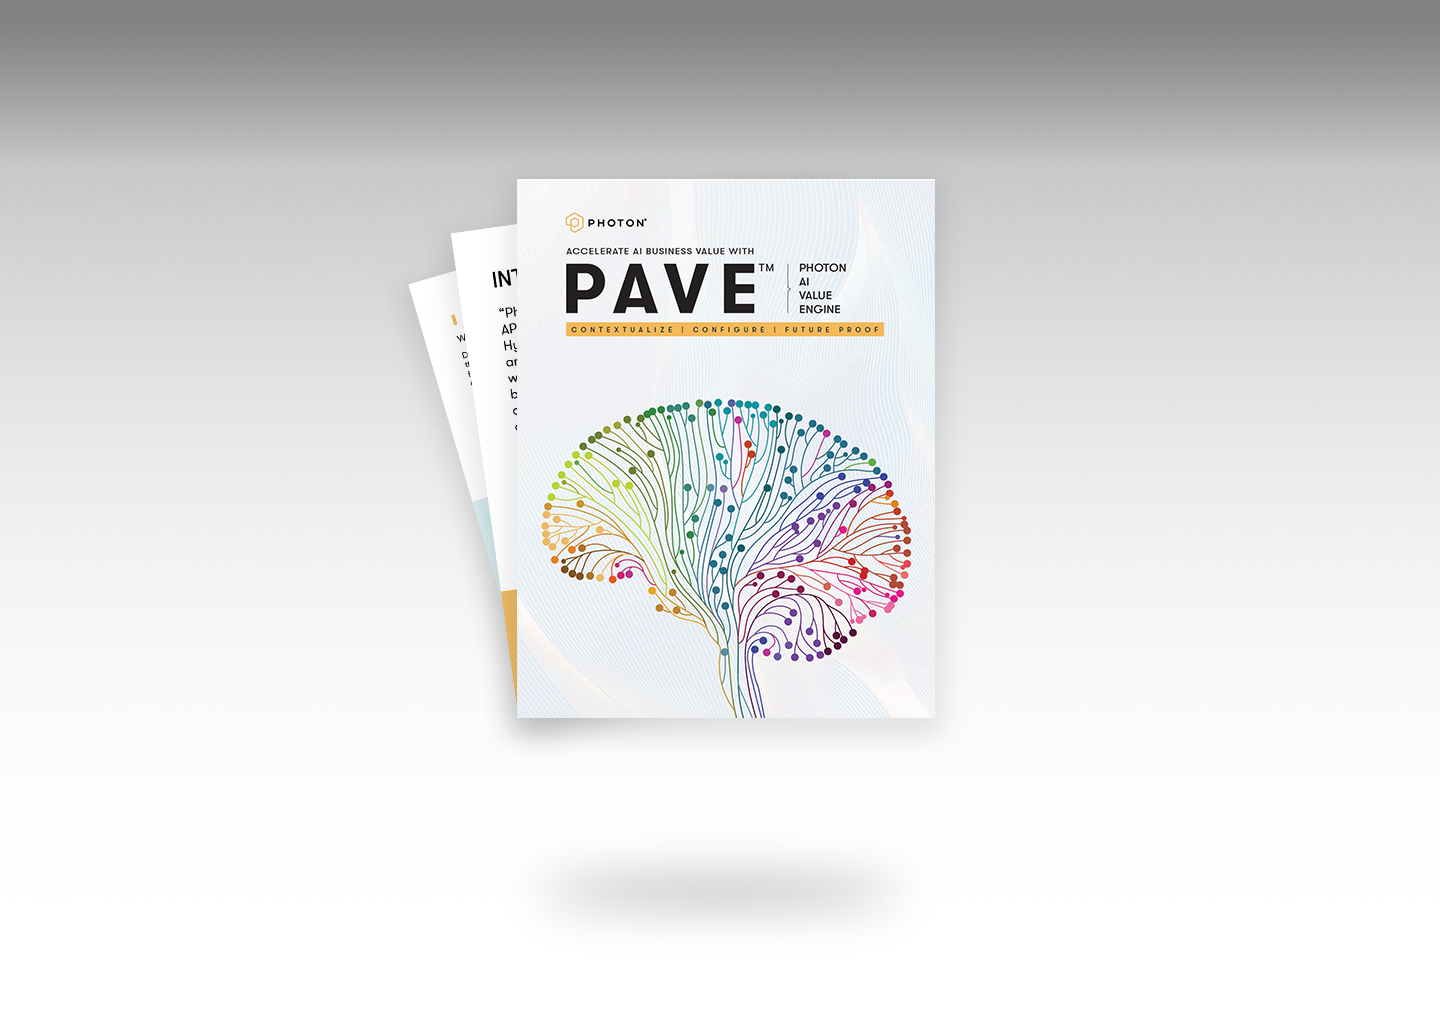 PAVE™ - Photon AI Value Engine